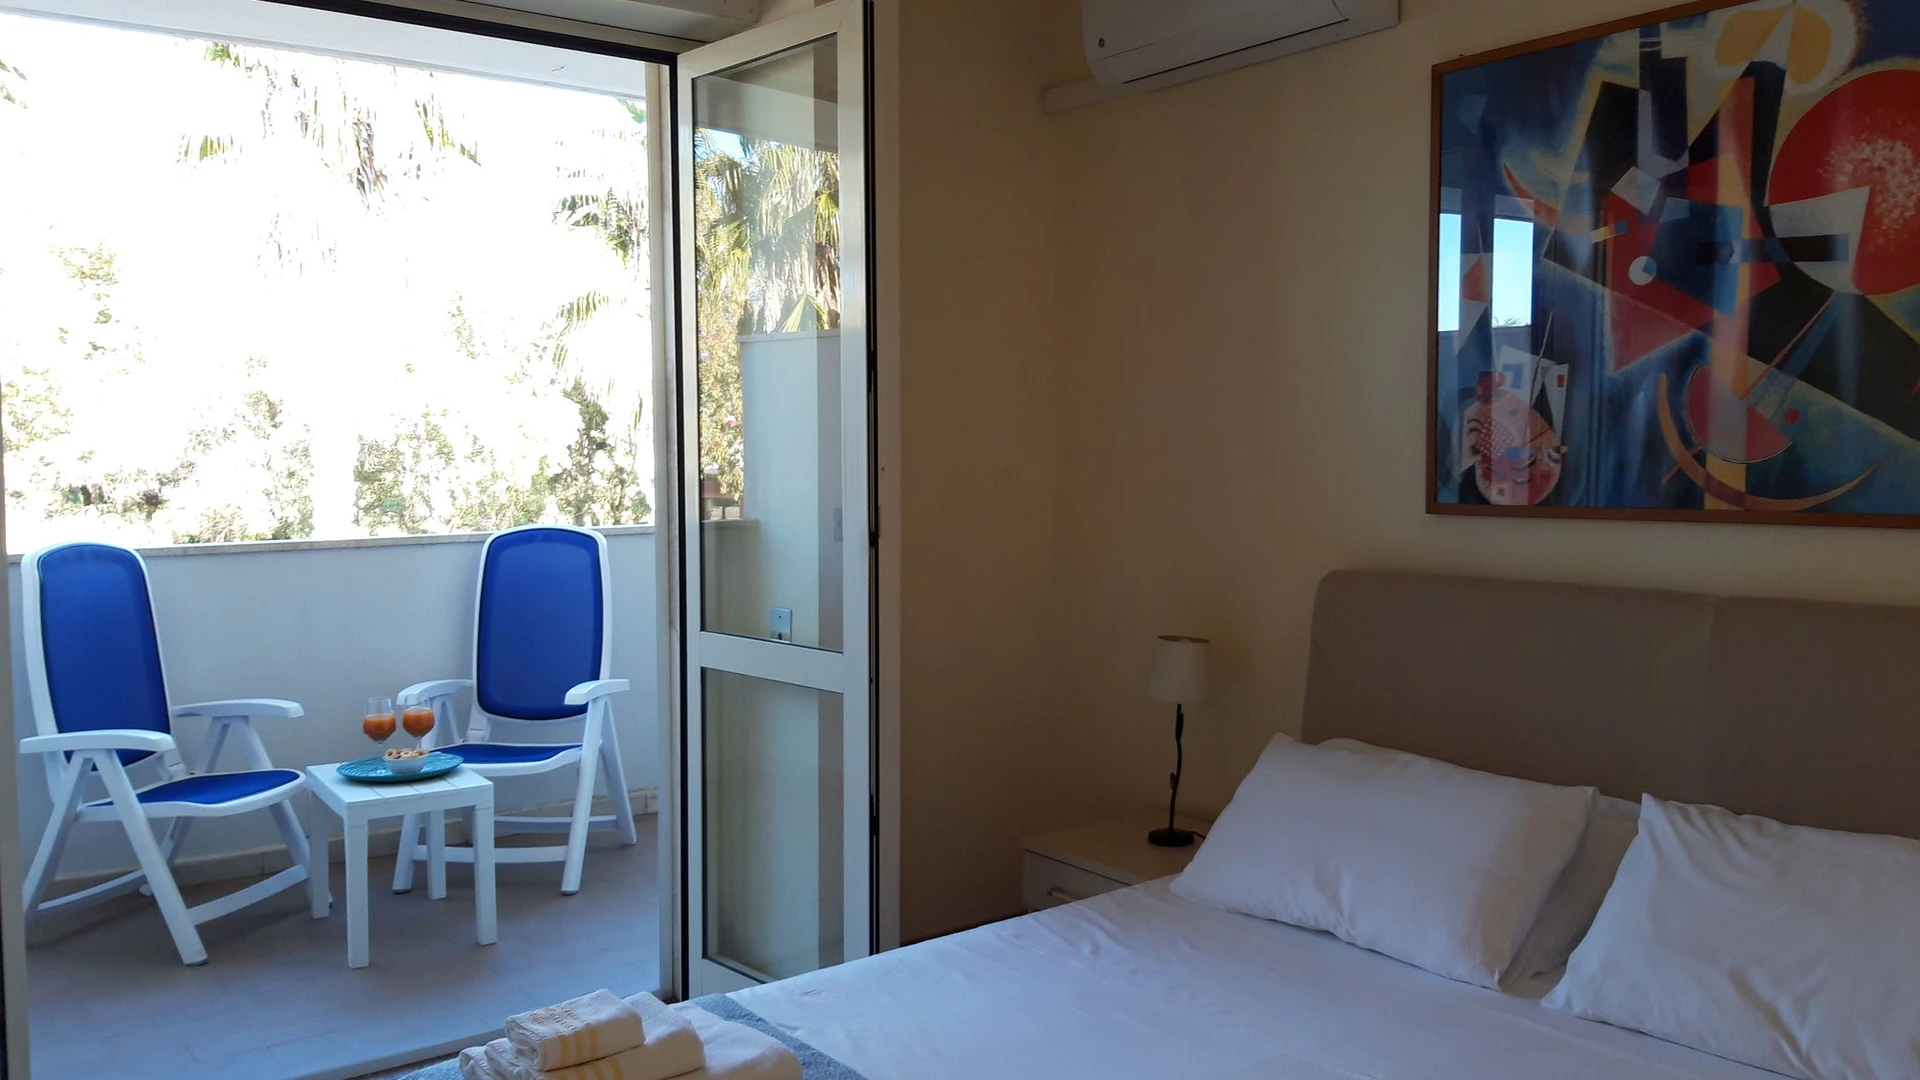 Lecce içinde 2 yatak odalı konaklama